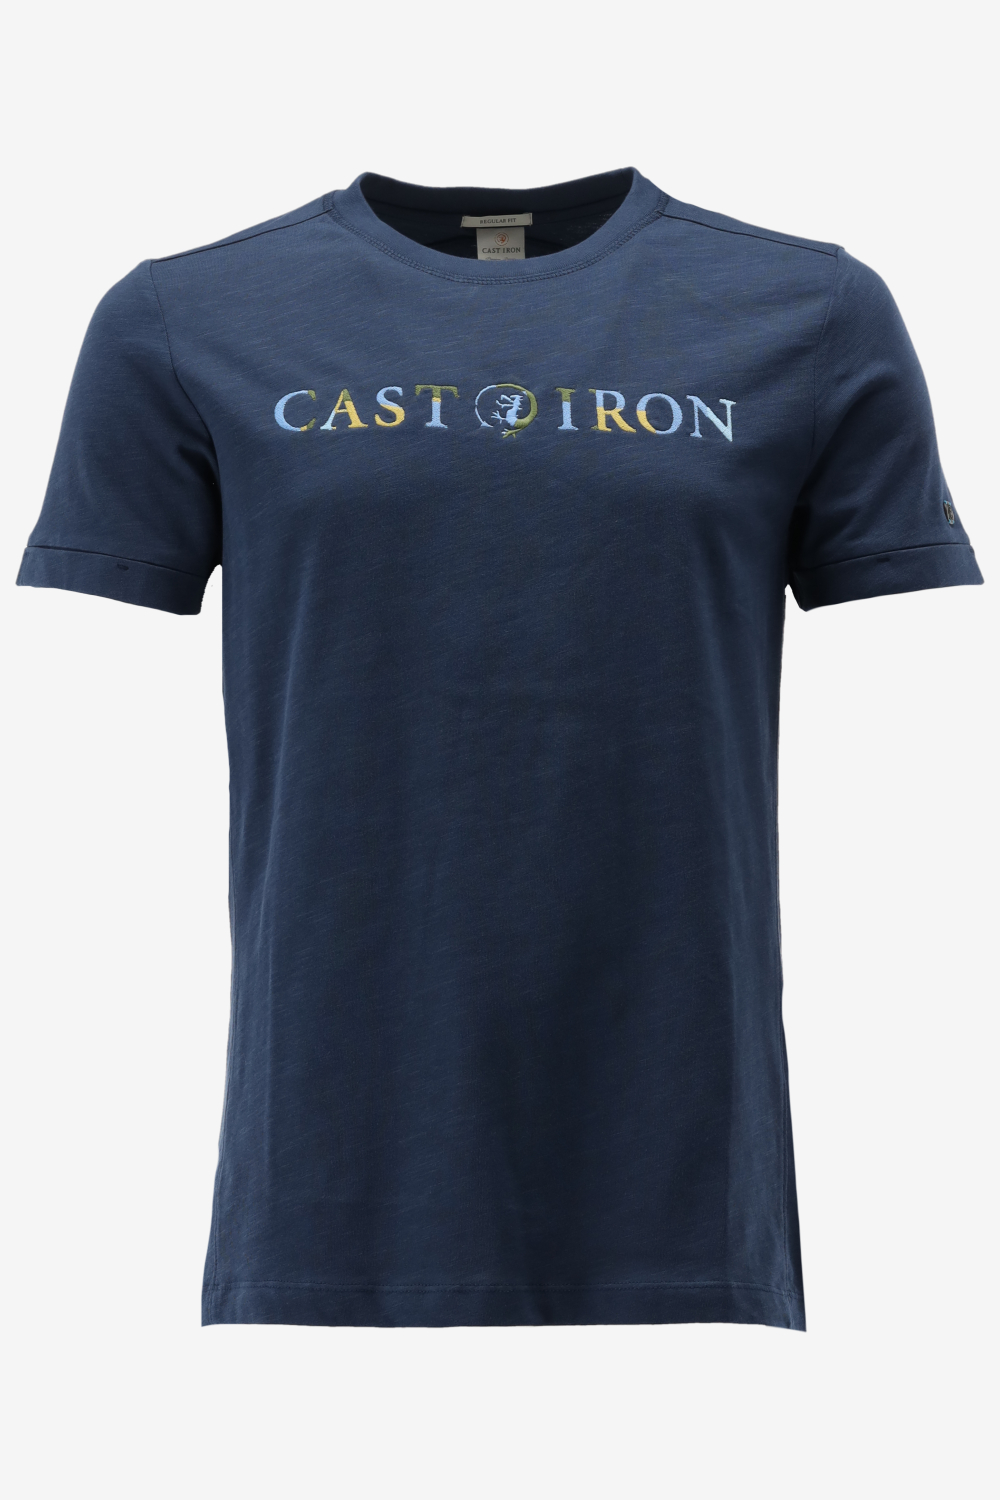 Cast Iron T shirt